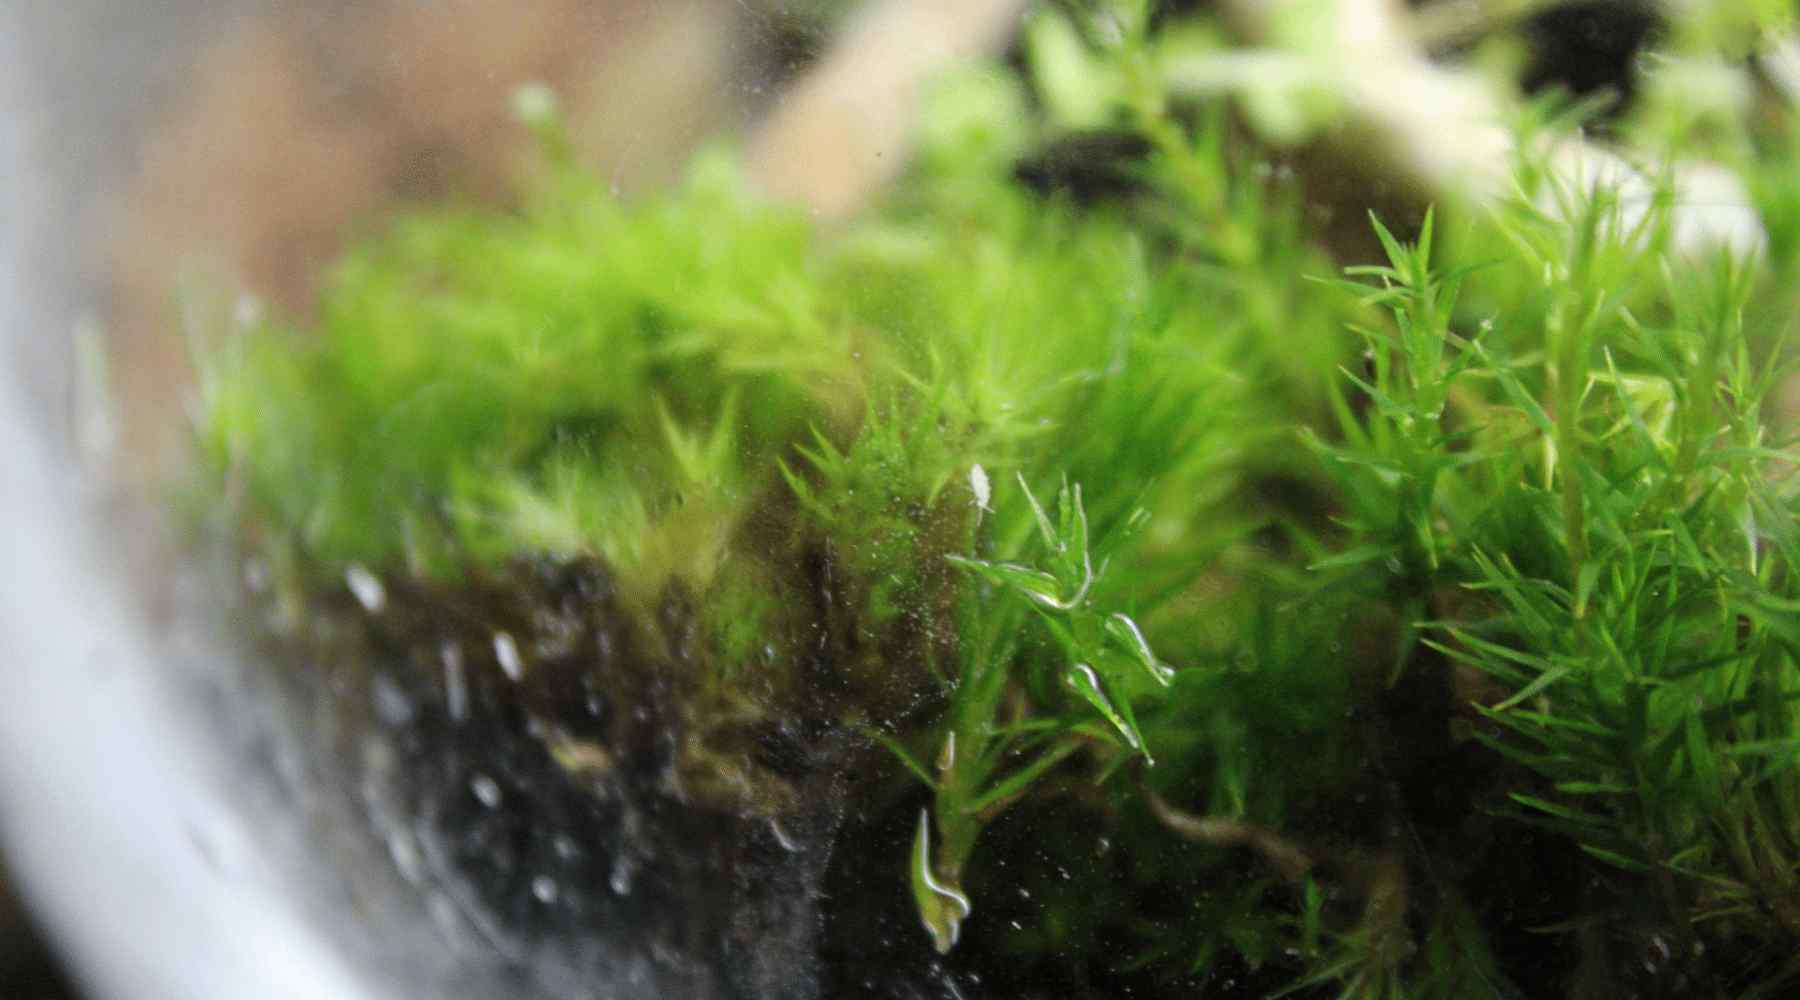 A Springtail on Moss in a Terrarium